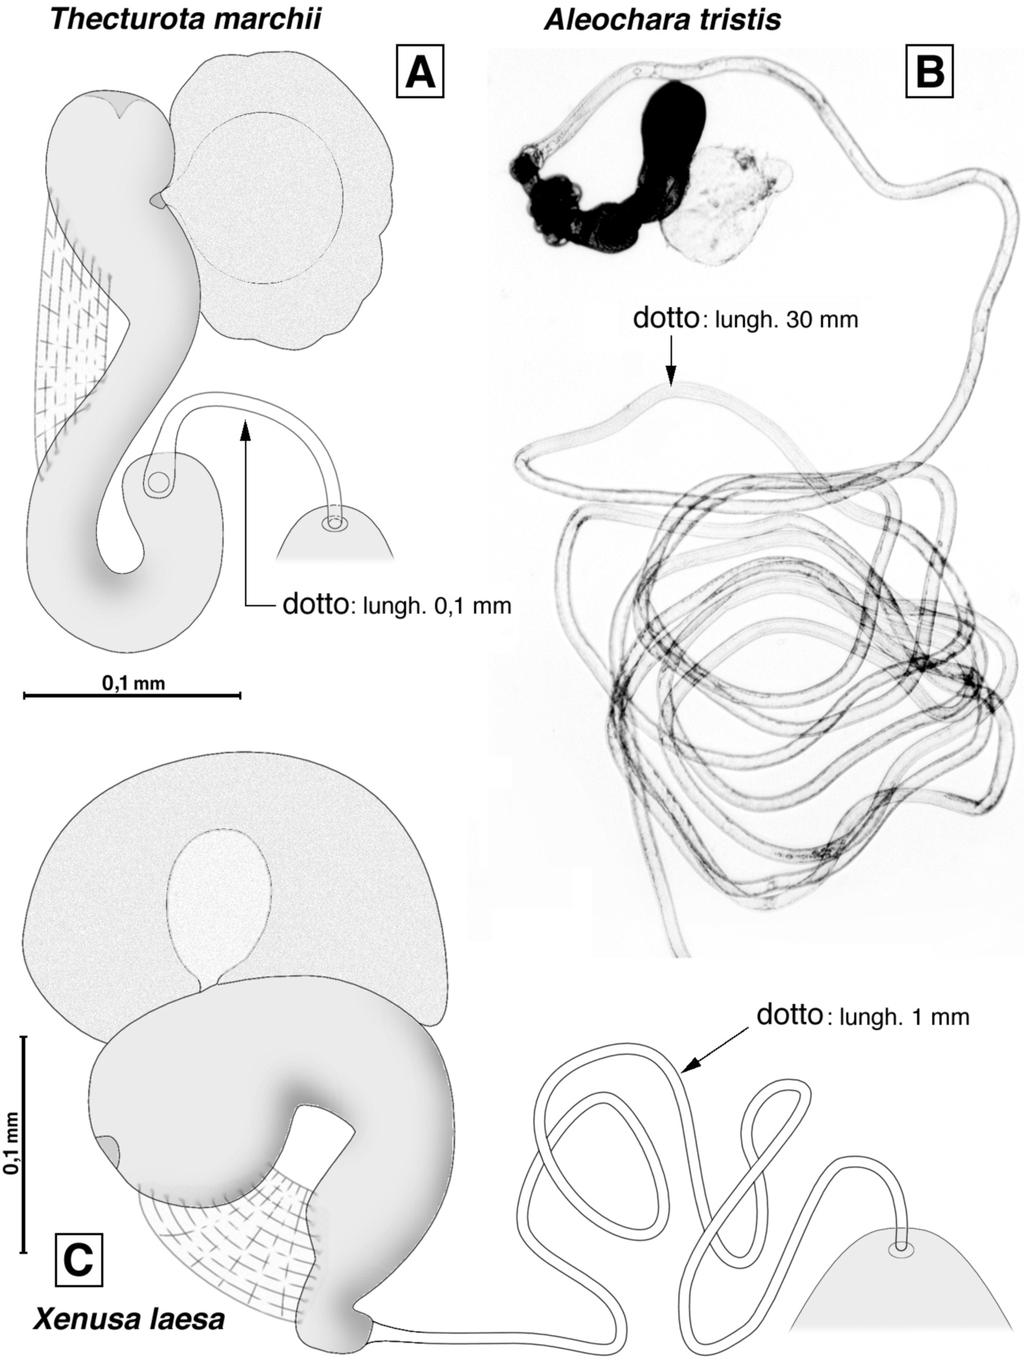 Fig. 2 - Spermateca